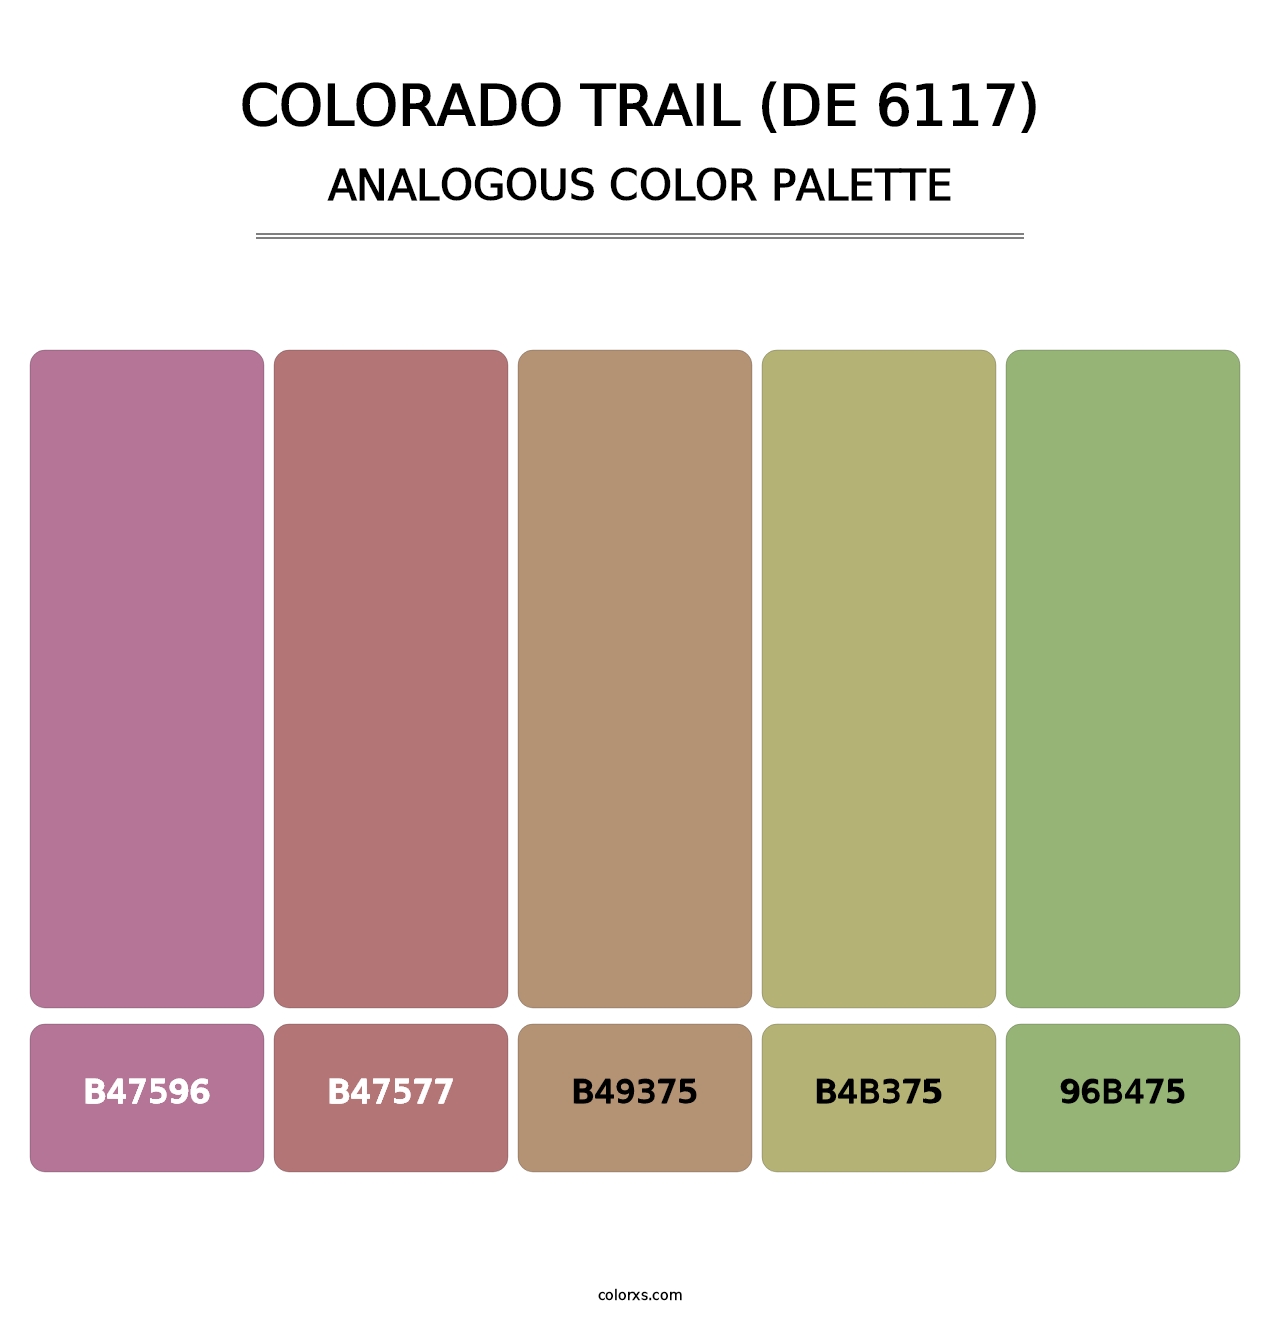 Colorado Trail (DE 6117) - Analogous Color Palette